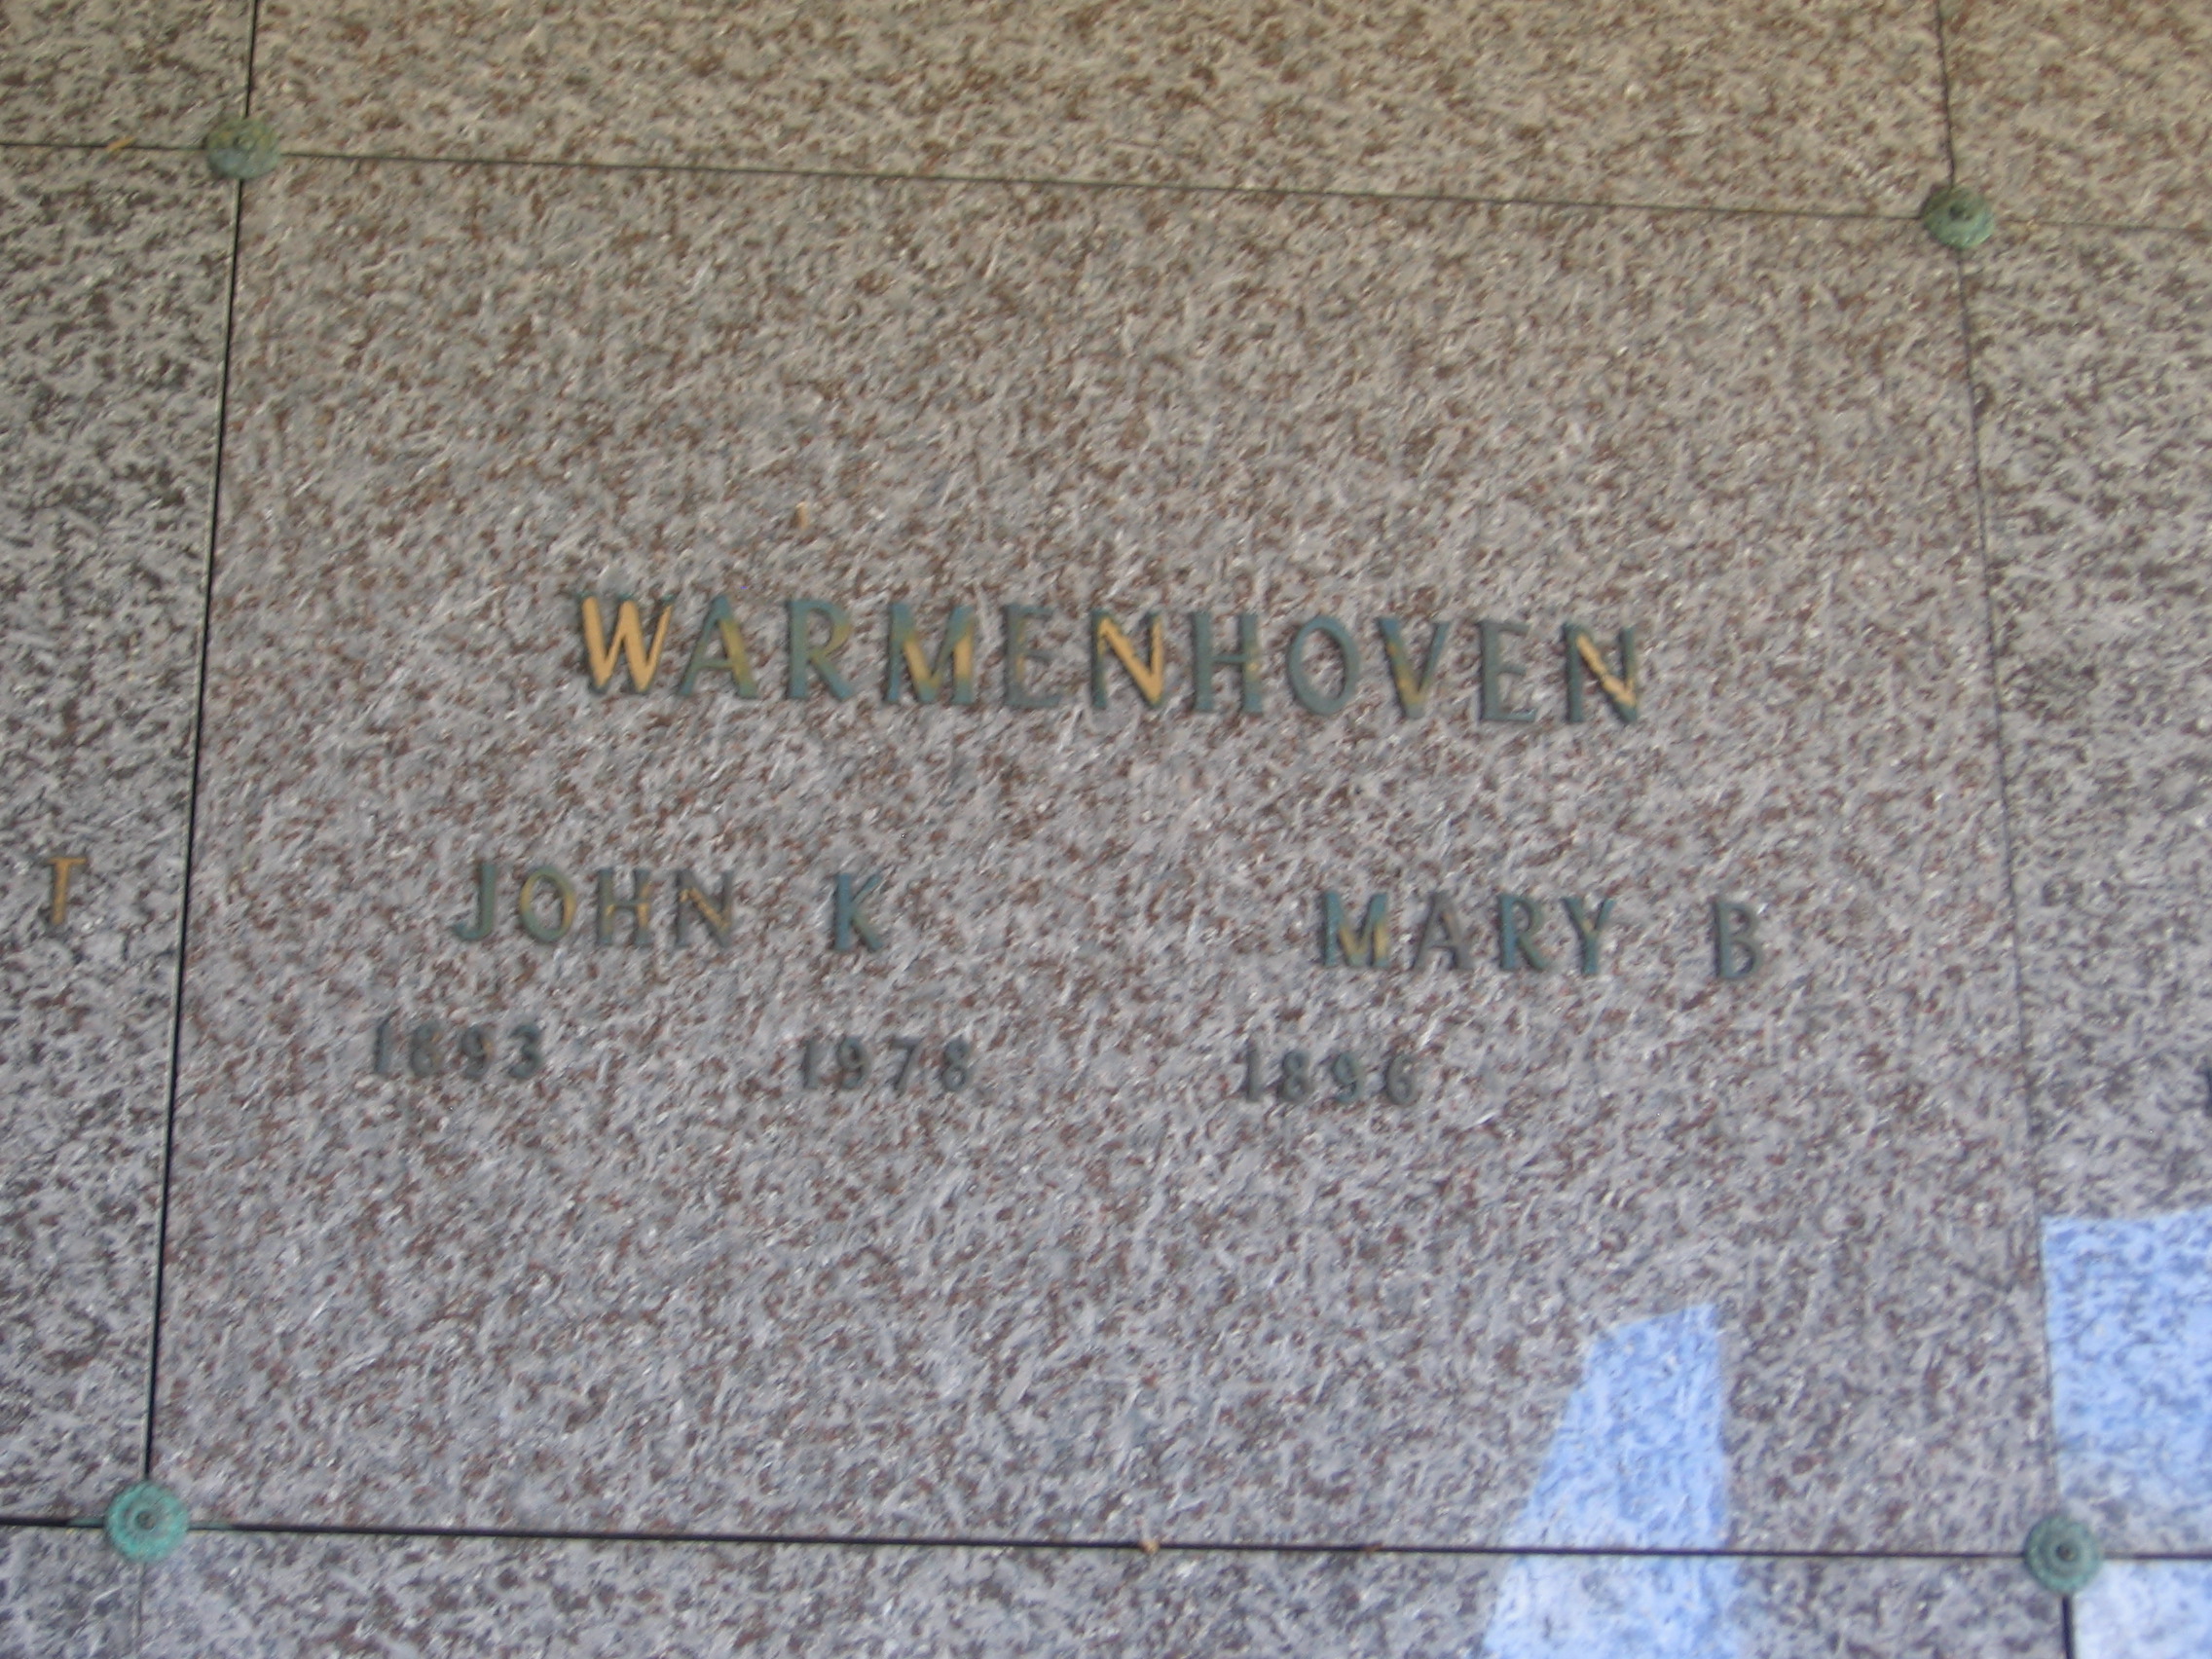 Mary B Warmenhoven